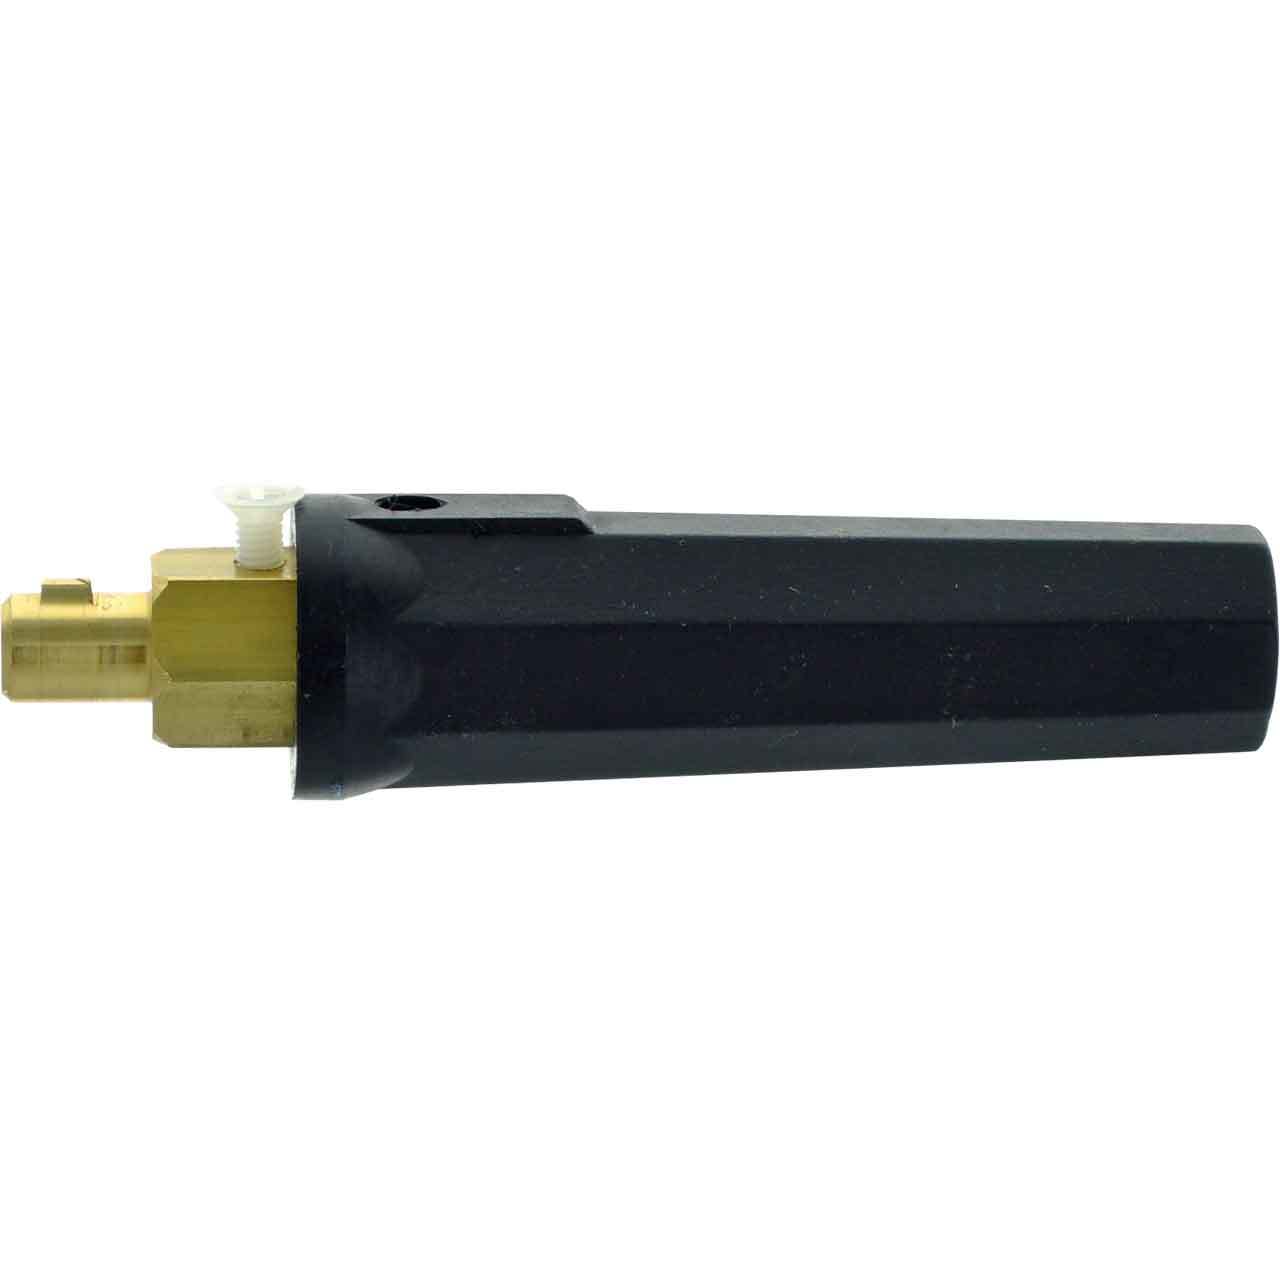 CK Worldwide SL2-25M 25mm Gas-Thru Male Safe-Loc Dinse Connector